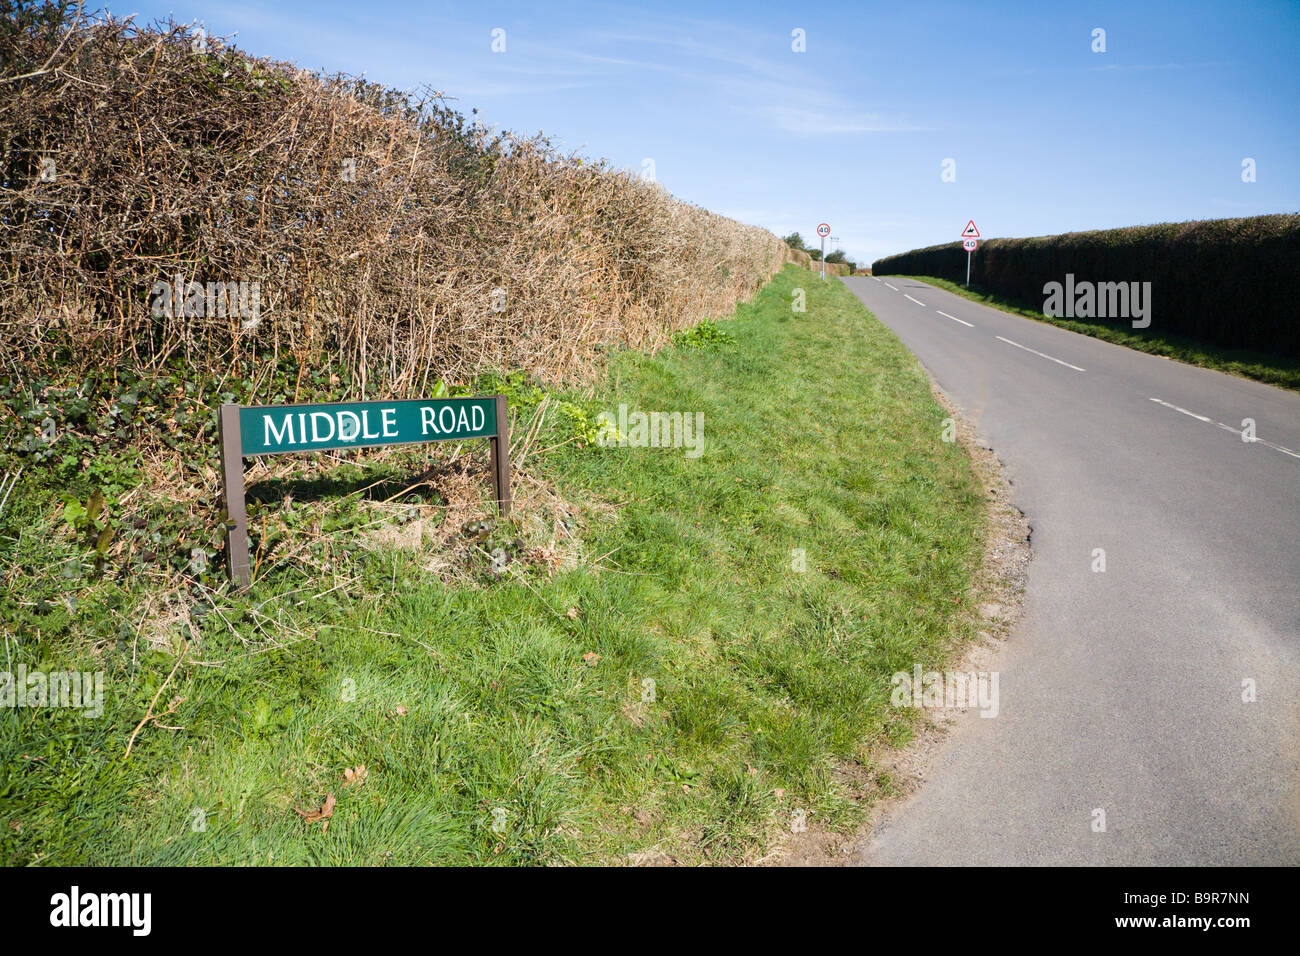 Panneau routier. Middle Road. Une route de campagne à la frontière du Hampshire et du Dorset. UK. Banque D'Images